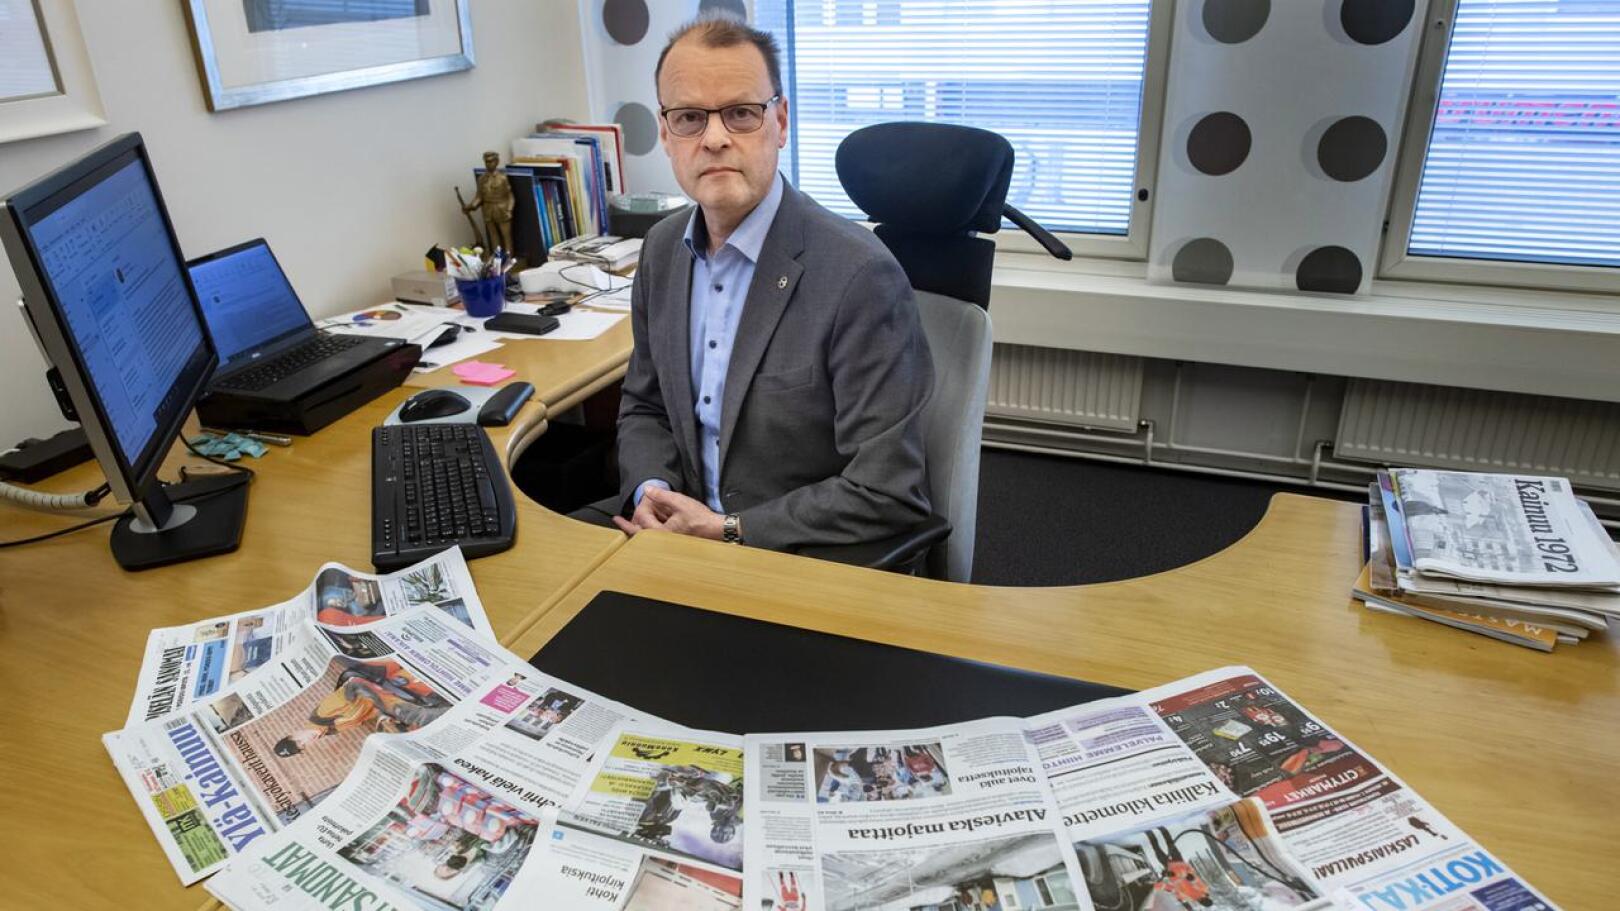 Hilla Groupin toimitusjohtaja Mikko Luoma haluaa korostaa digituotteiden merkitystä tilanteessa, jossa tiedontarve on suurta, mutta paperin saatavuus heikkoa.